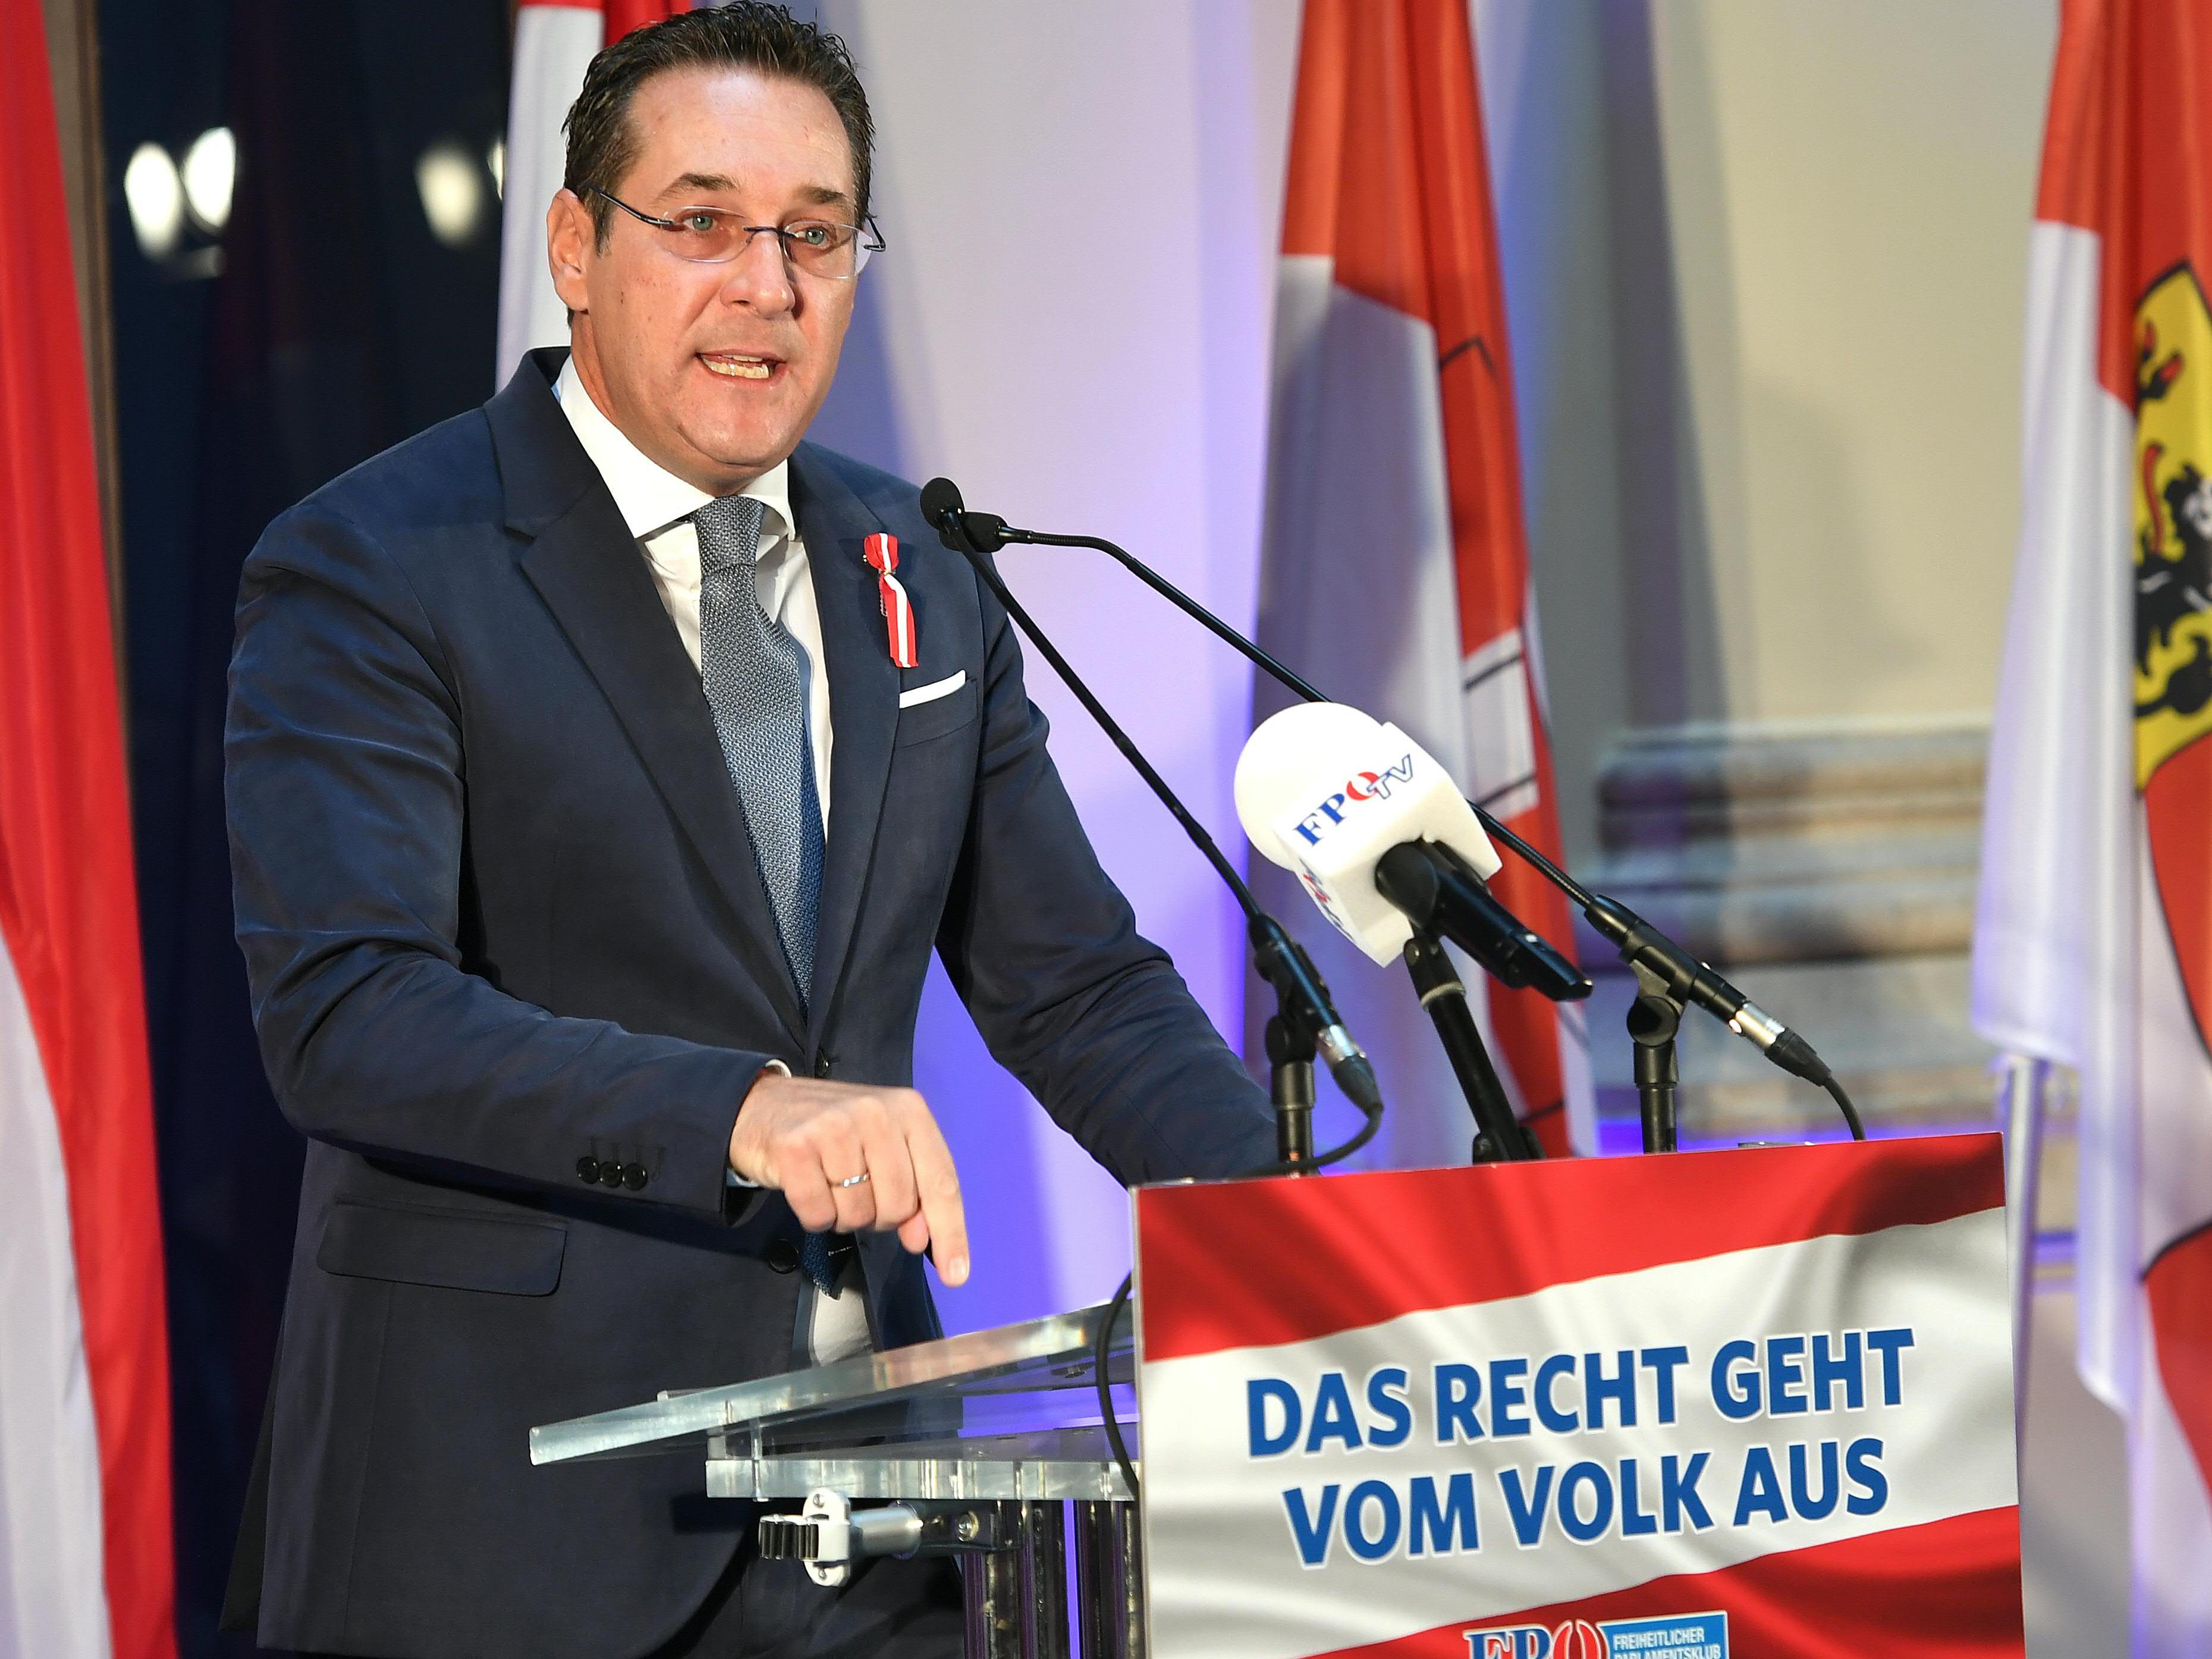 FPÖ-Bundesparteiobmann Heinz-Christian Strache bei seiner Rede am Montag.